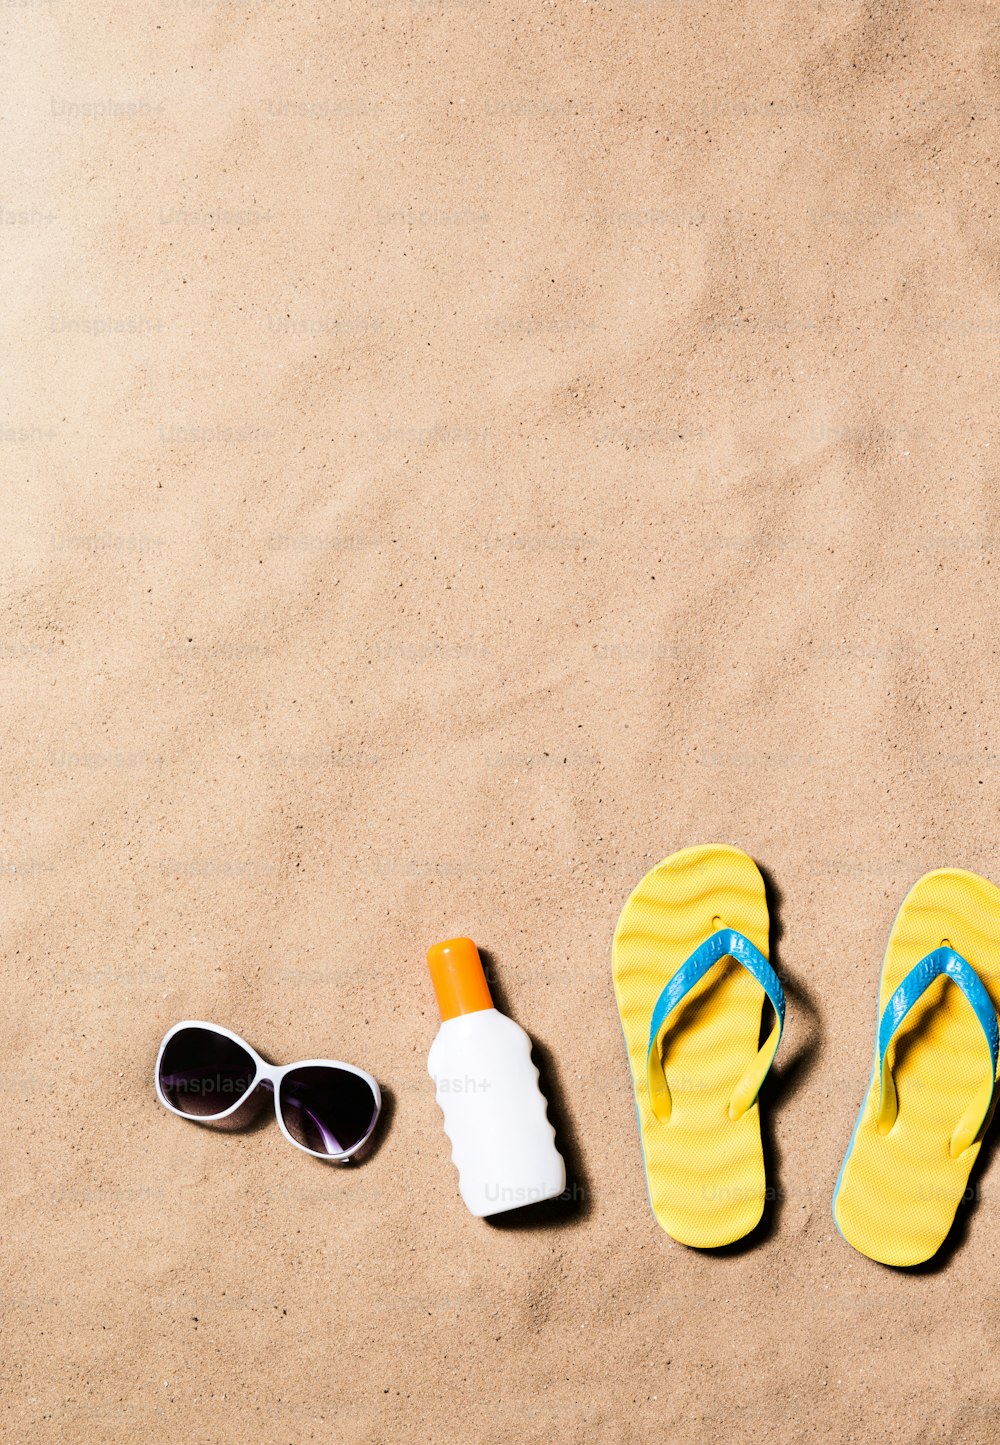 ビーチで黄色のビーチサンダル、サングラス、日焼けクリームを合わせた夏休みの構図。砂浜の背景、スタジオショット、フラットレイ。スペースをコピーします。